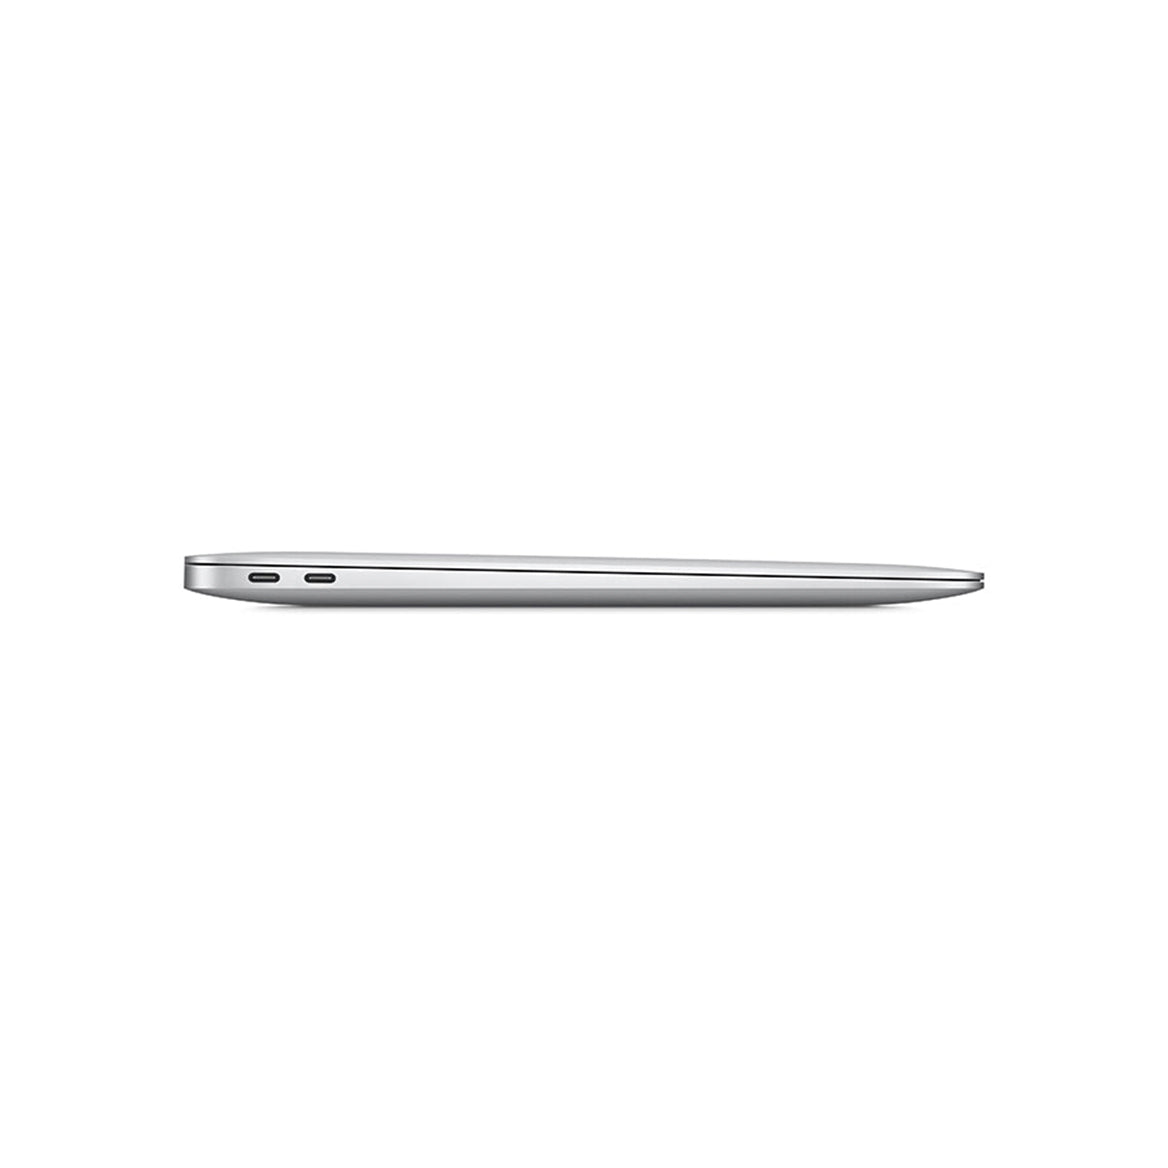 MacBook Air M1 silver 2020 1